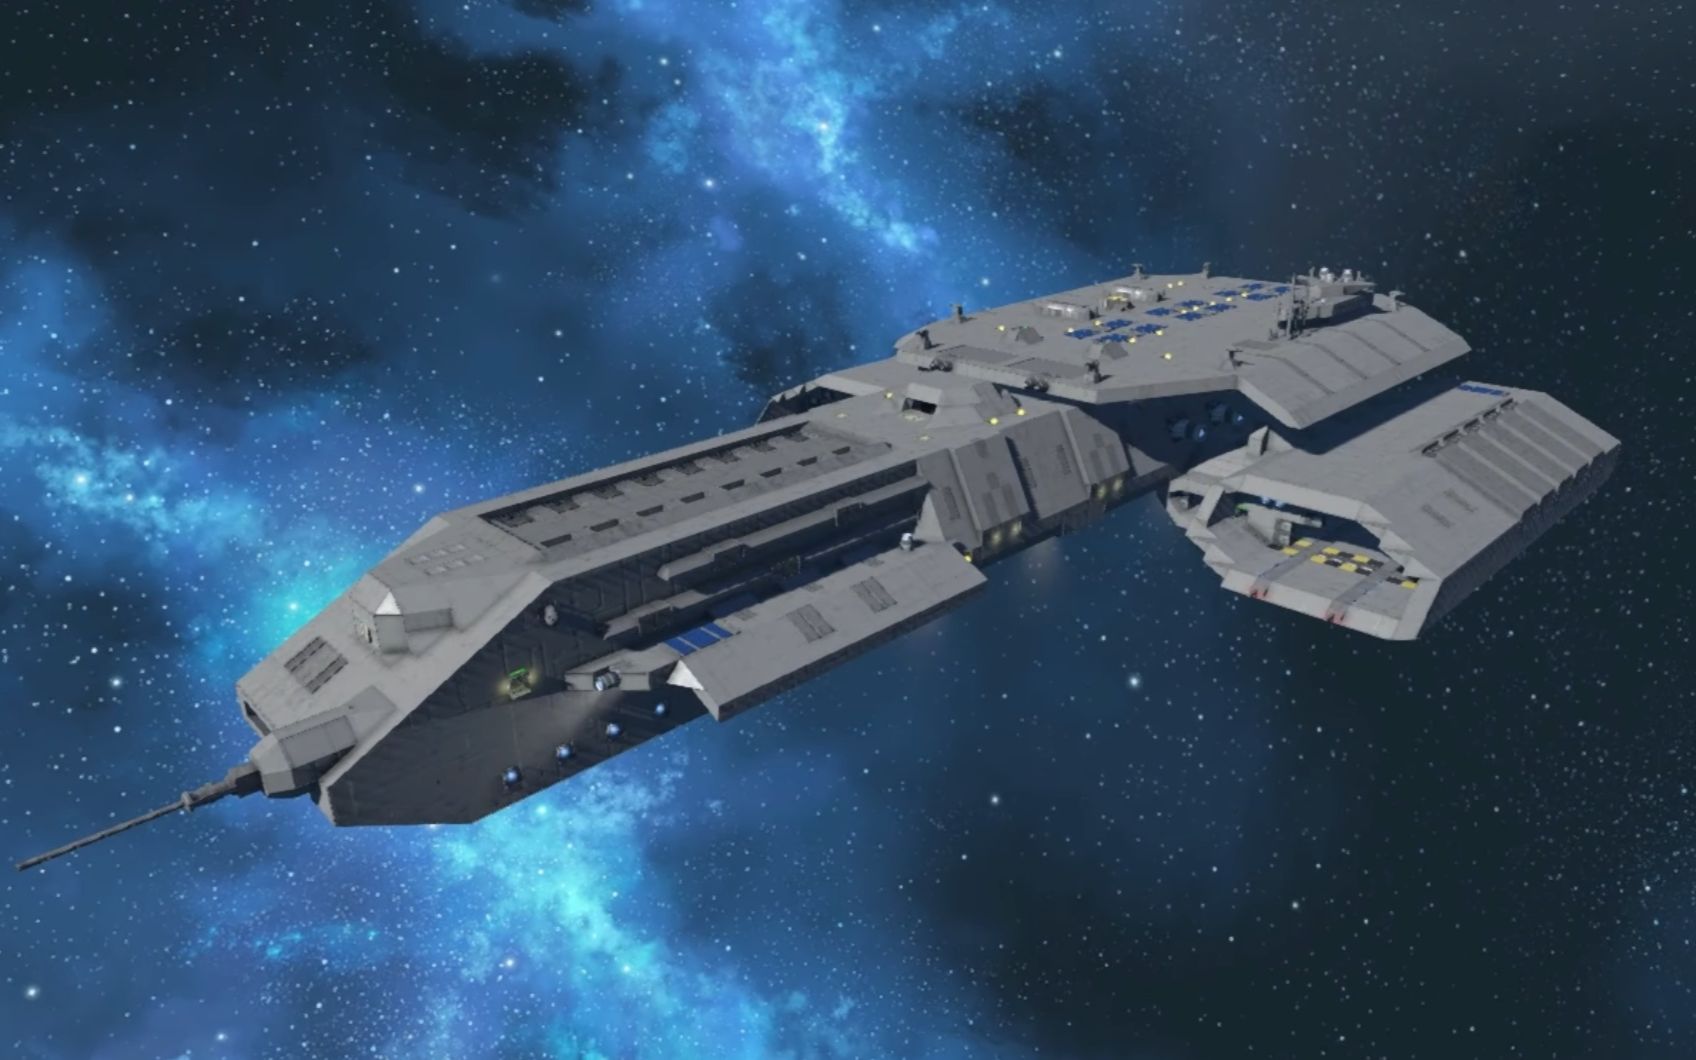 太空工程师星际之门代达罗斯级战舰bc304